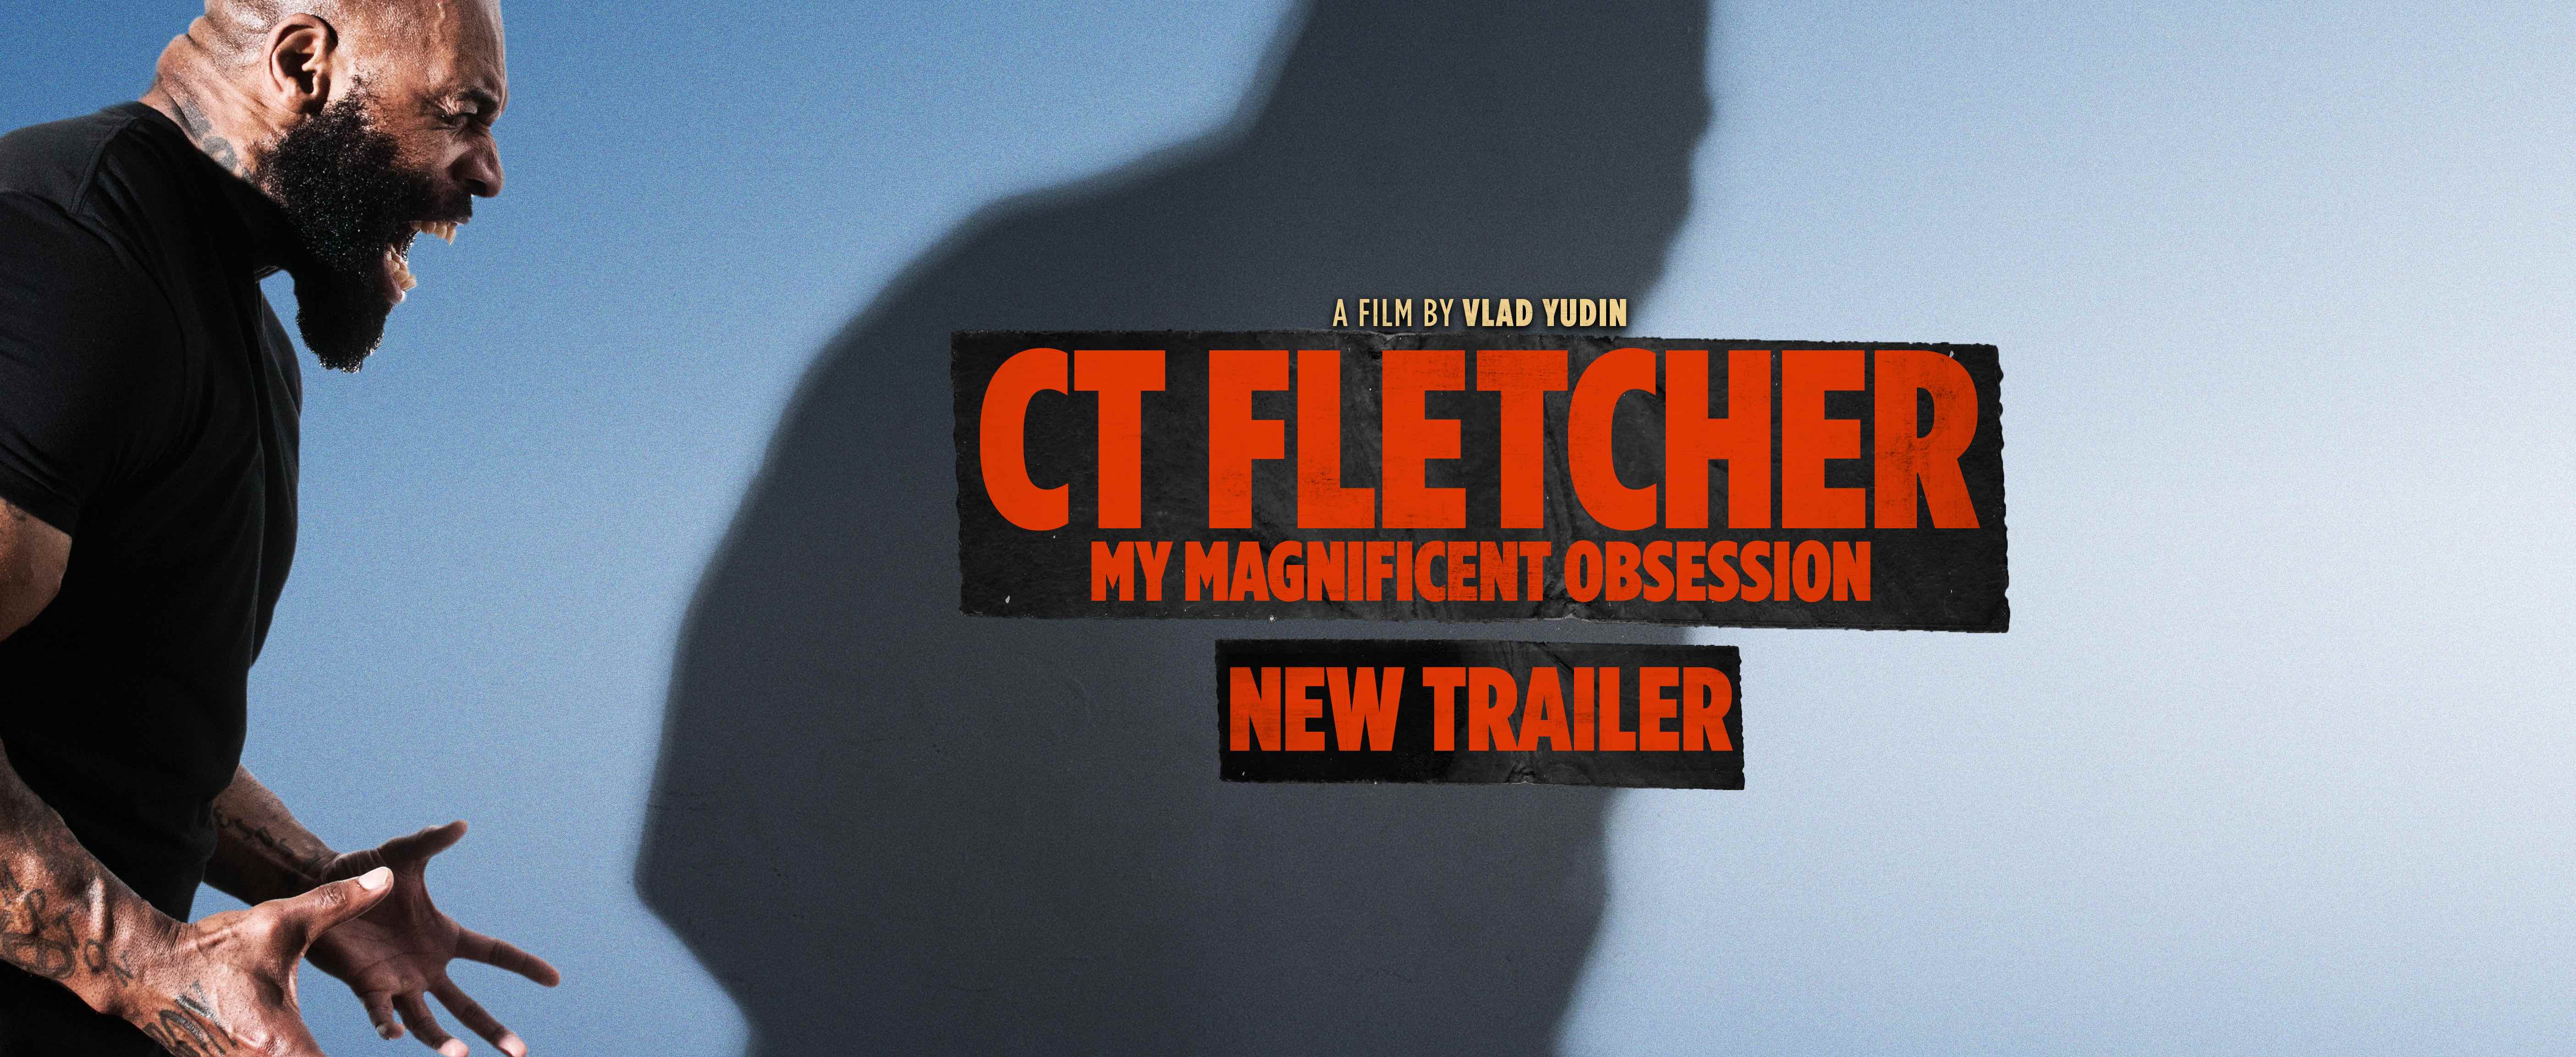 Generation Iron CT Fletcher Trailer 2